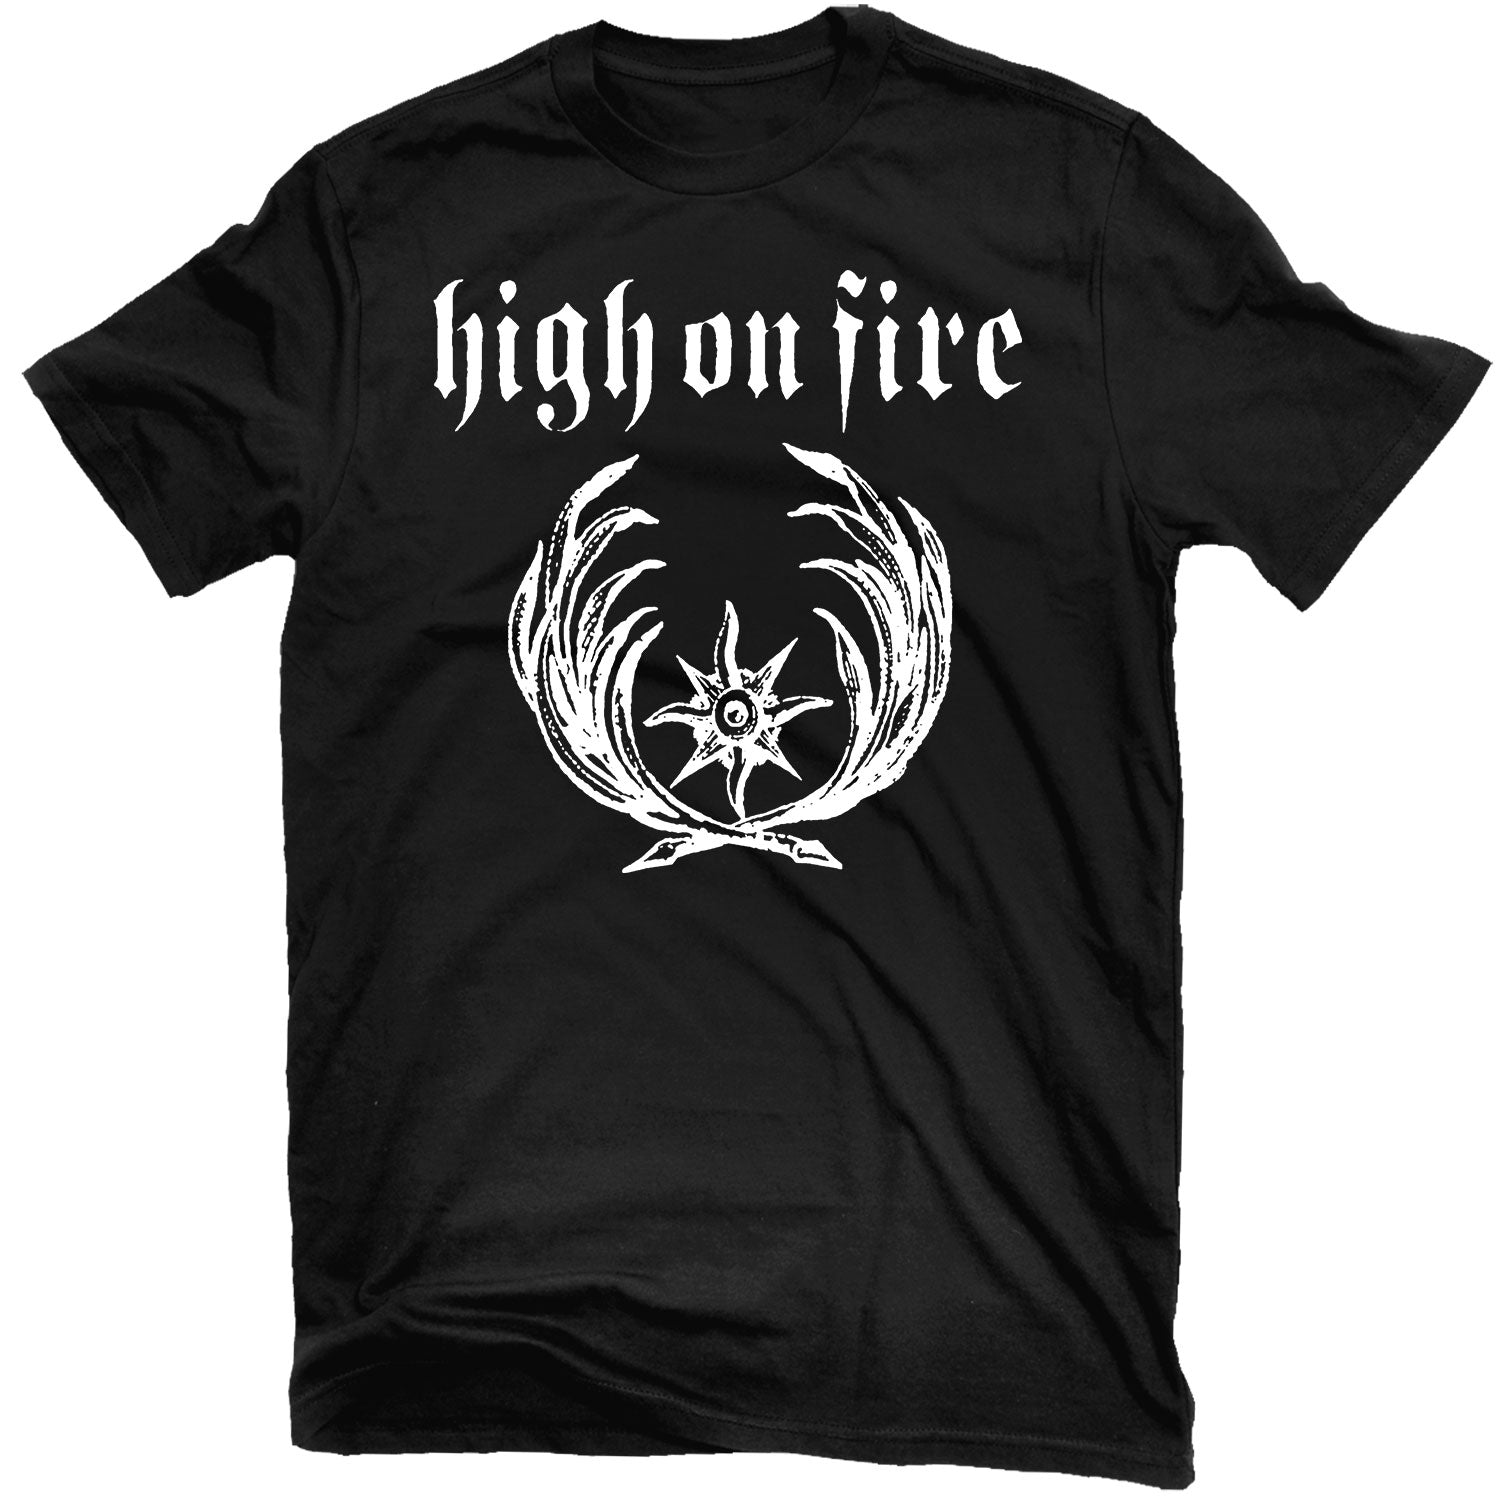 High on Fire "Nemesis" T-Shirt